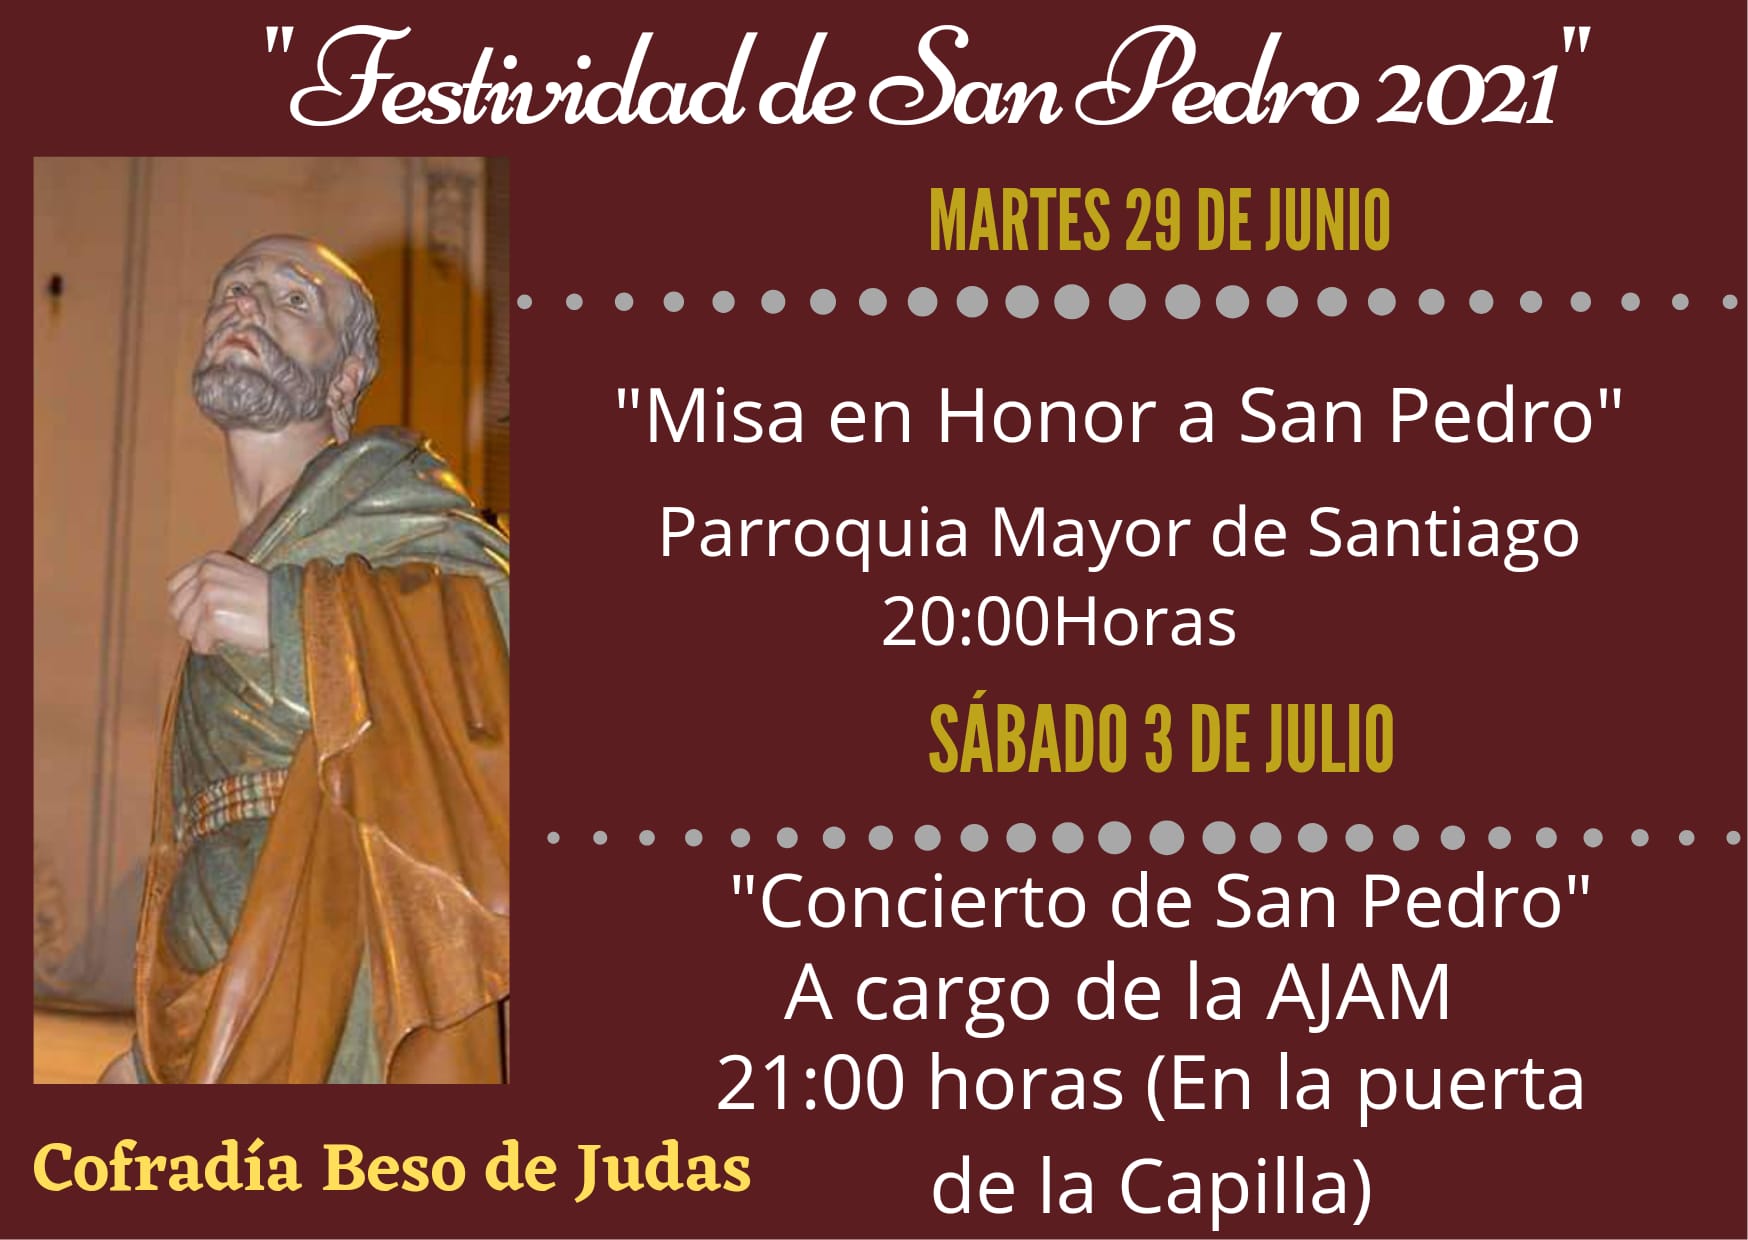 La Cofradía Beso de Judas celebrará la festividad de San Pedro con una misa y un concierto